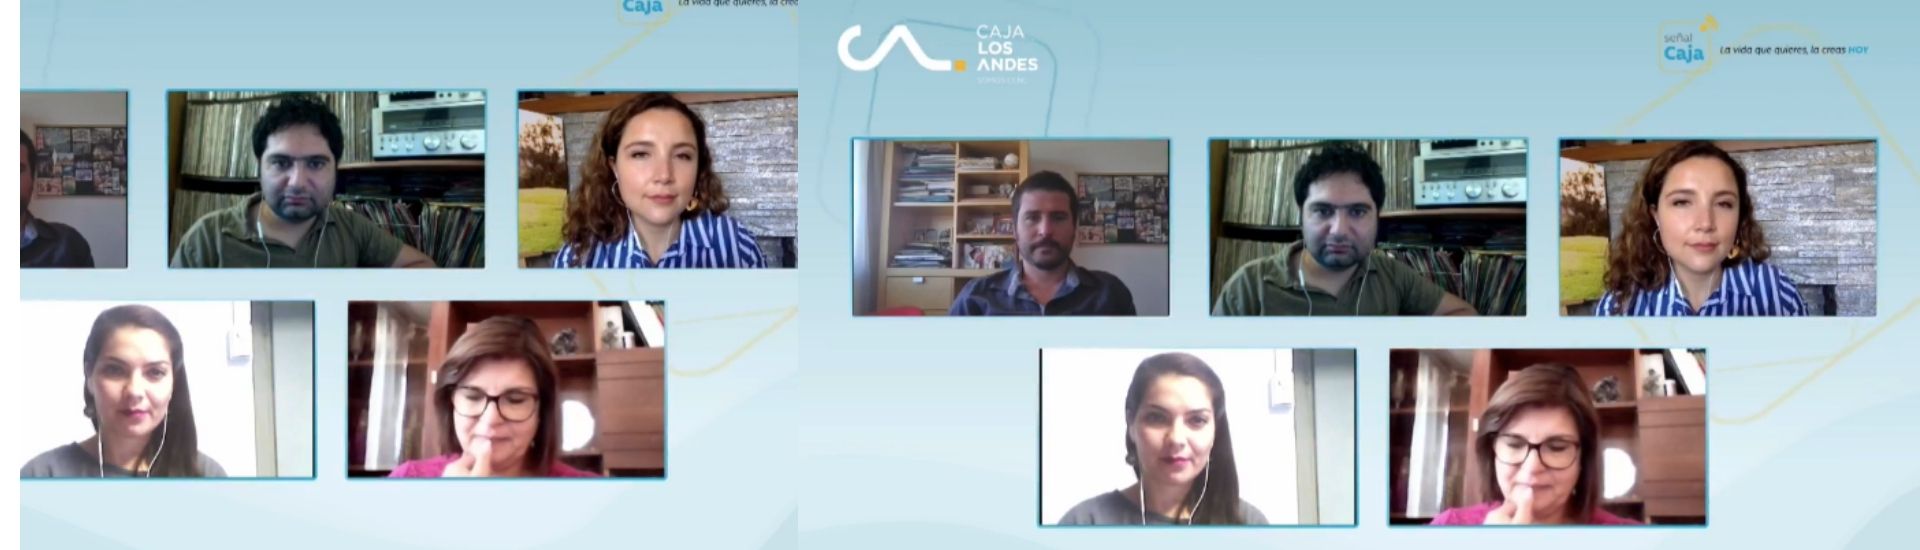 Imagen de la transmisión en vivo con caja los andes, junto a los profesores finalistas del global teacher prize chile 2020